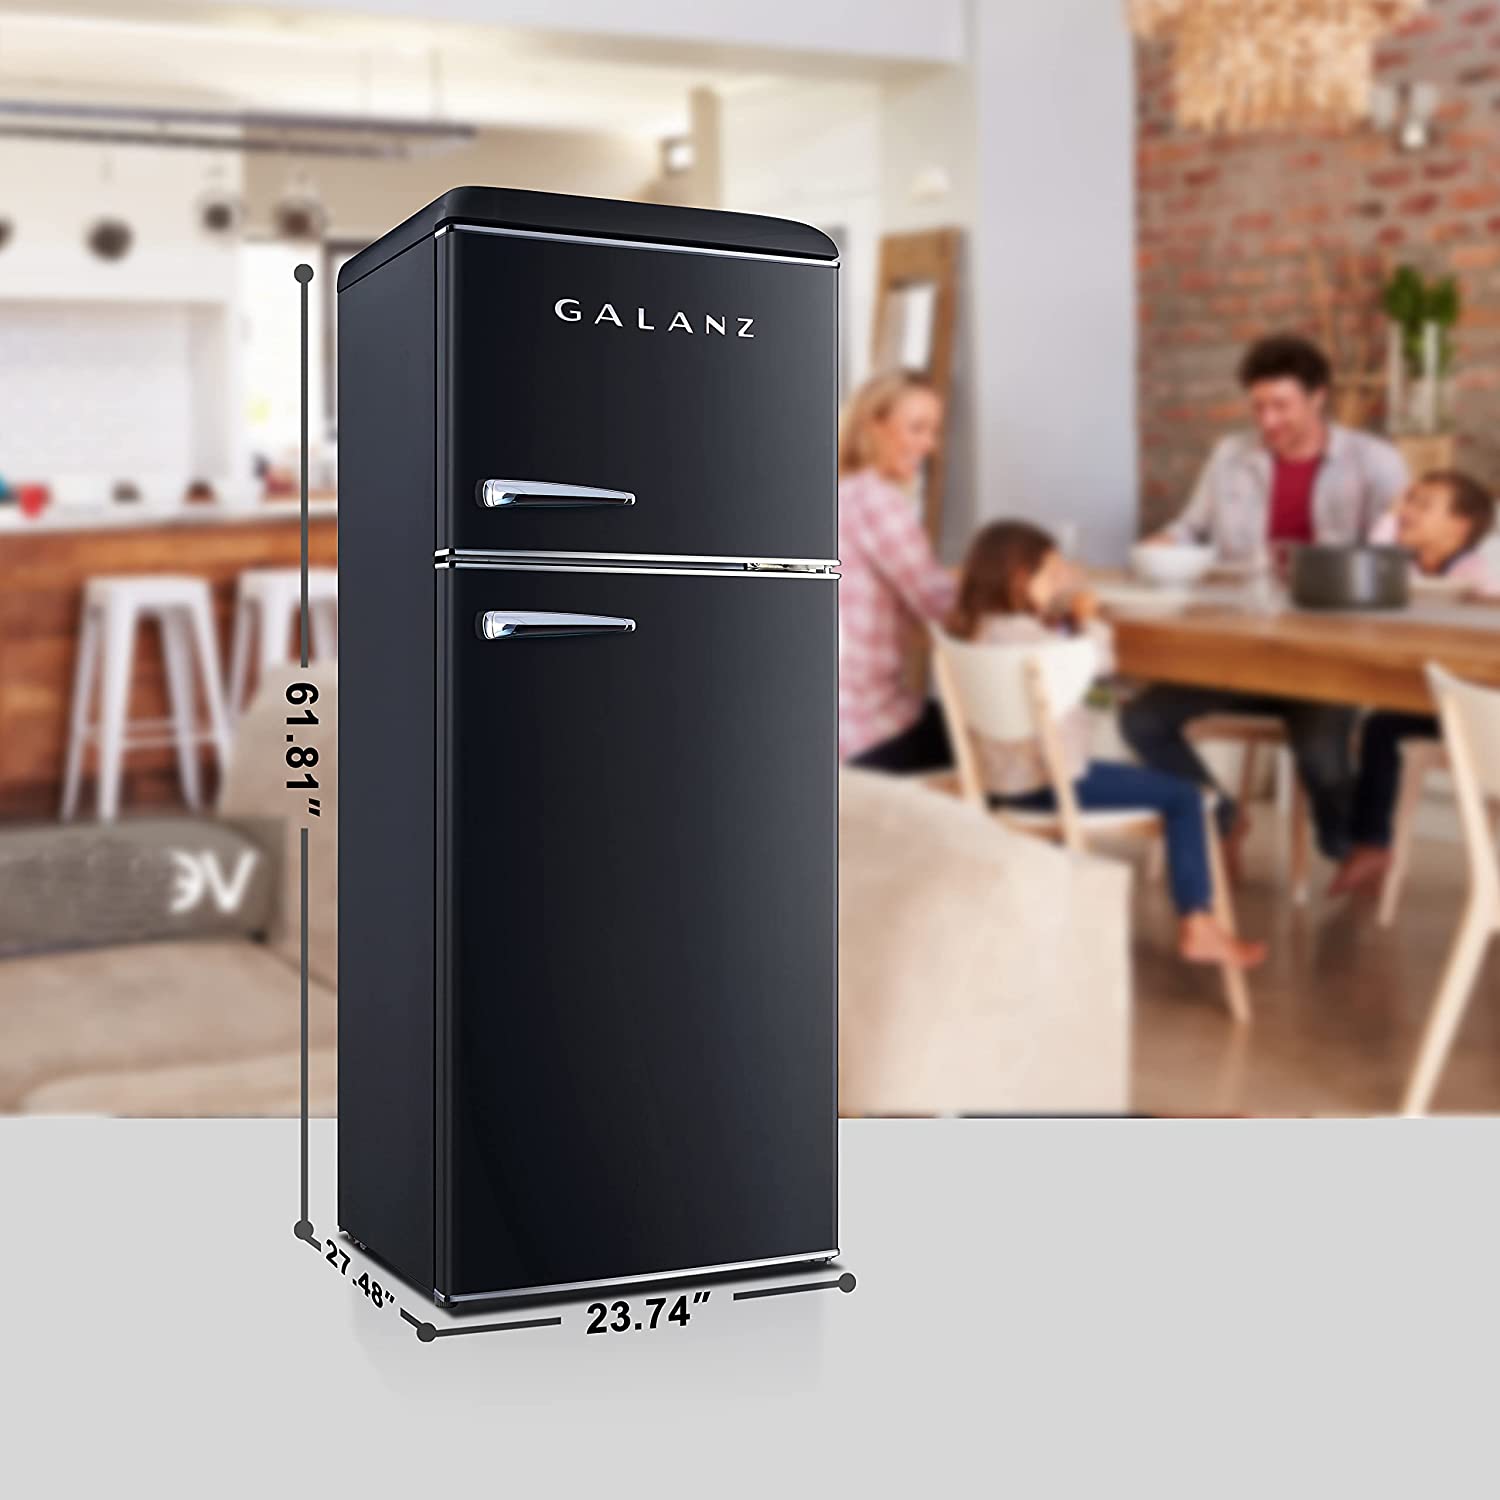 Galanz GLR10TBKEFR True Top Freezer Retro Refrigerator Specs